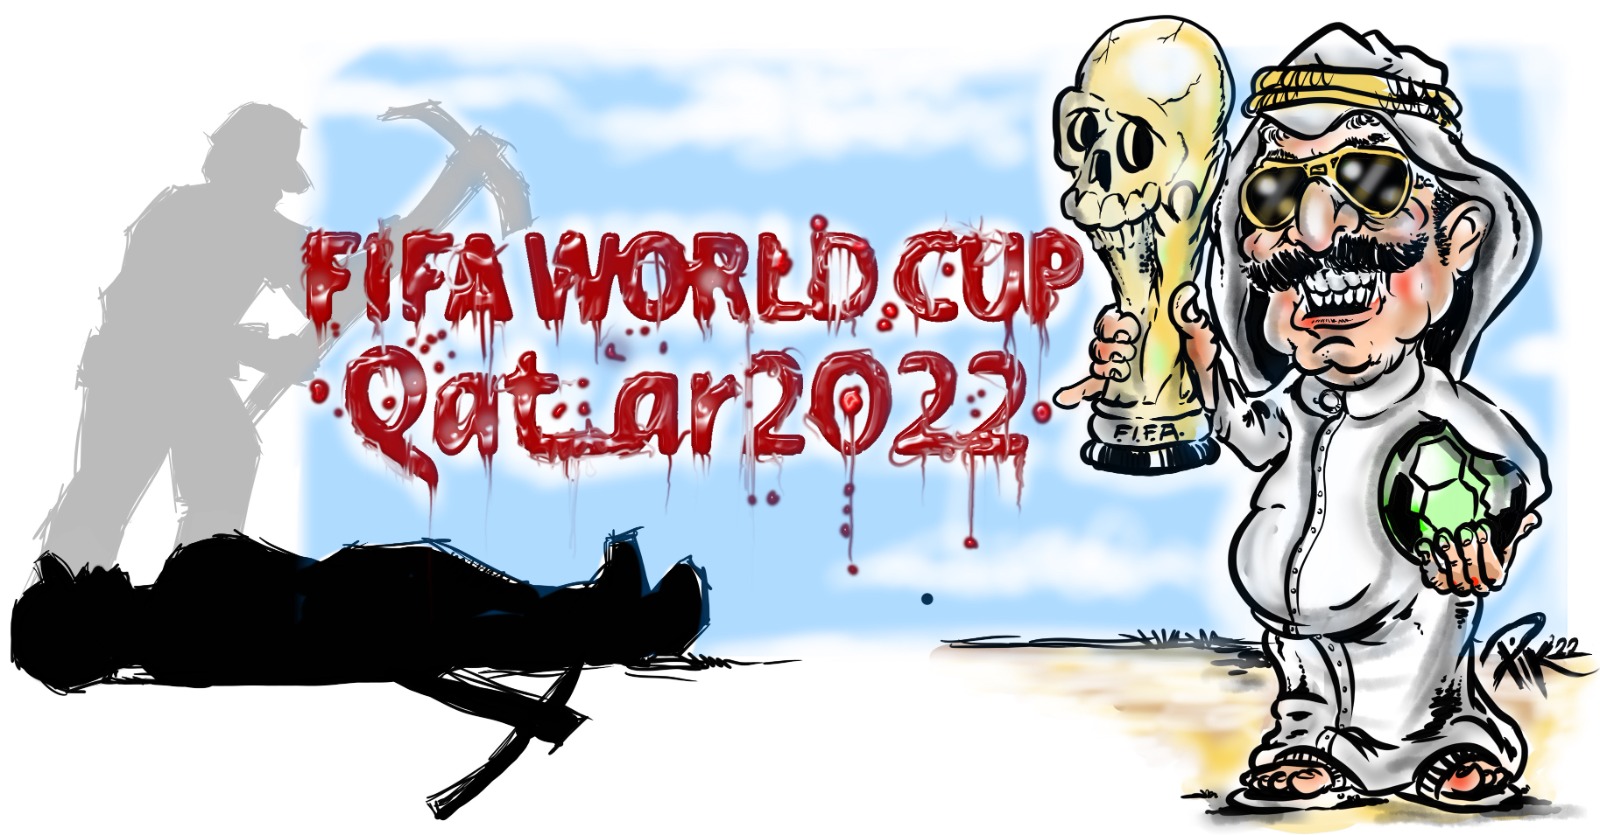 Iniziano i Mondiali di calcio 2022 in Qatar